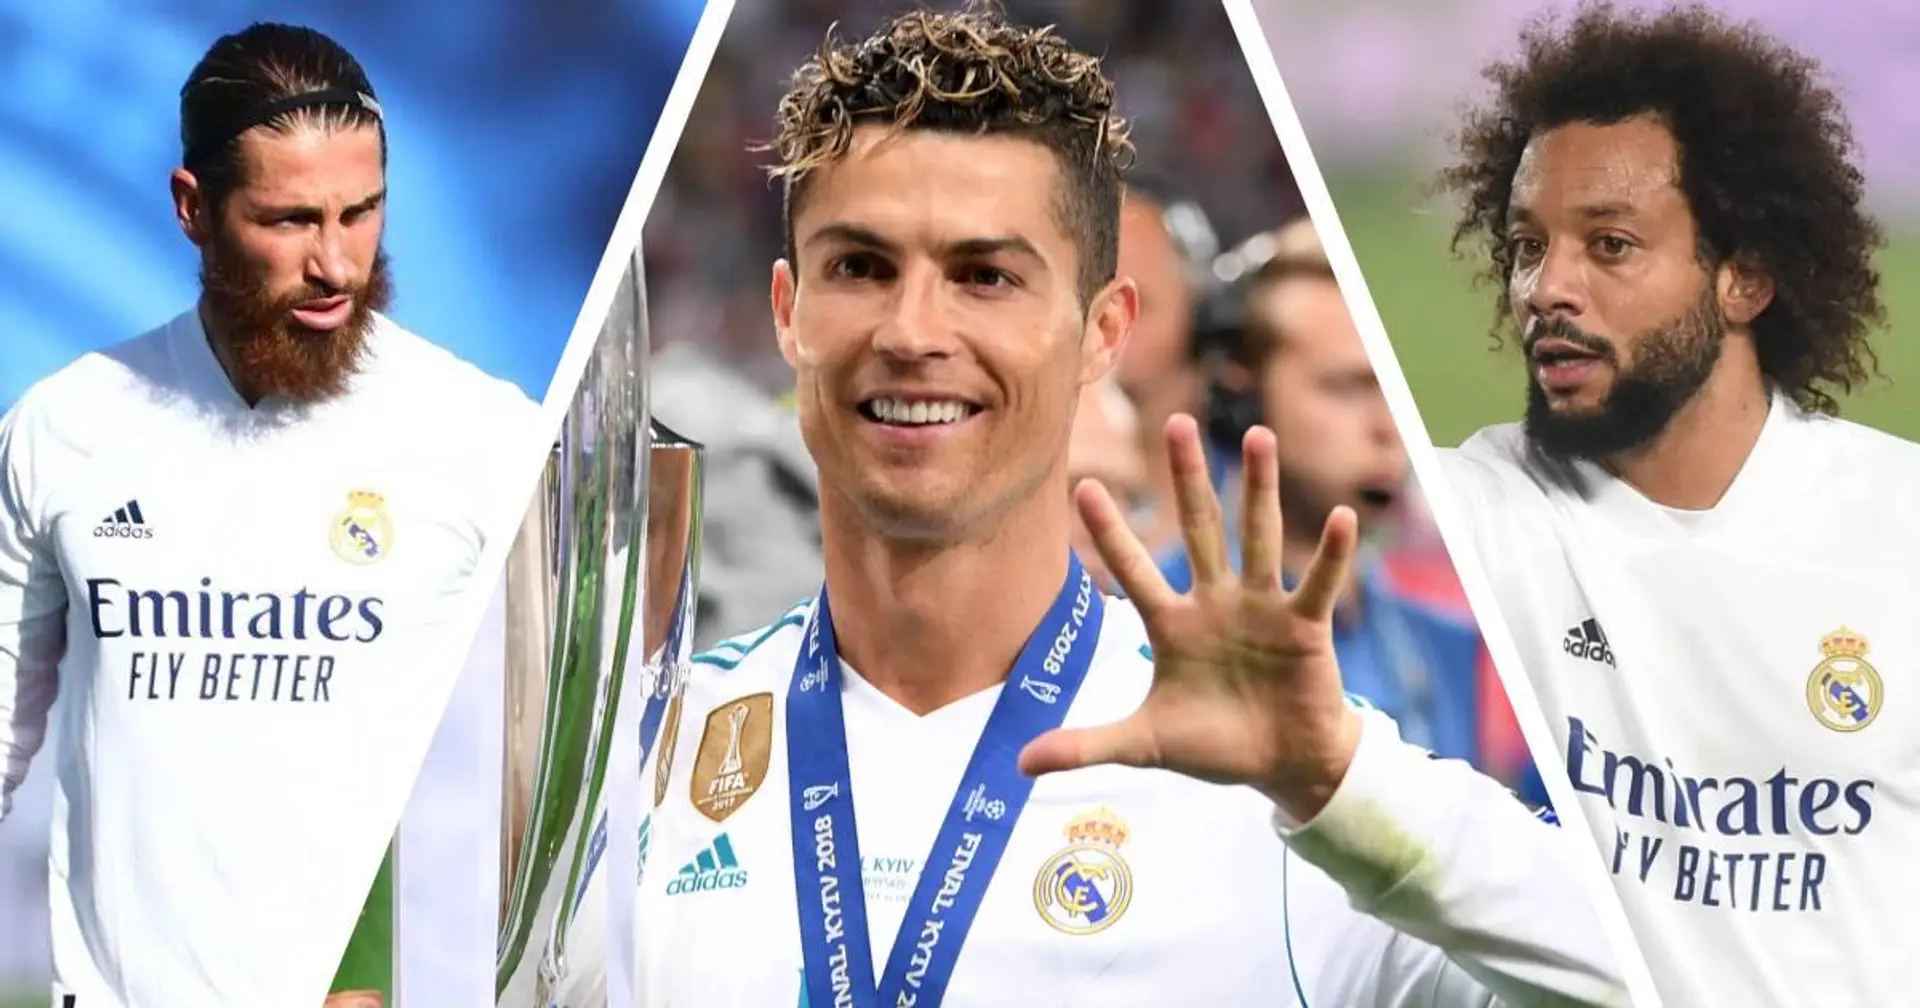 2 stars actuelles et 4 anciennes de Madrid nommées parmi les 10 joueurs de football avec le plus d'abonnés sur les réseaux sociaux